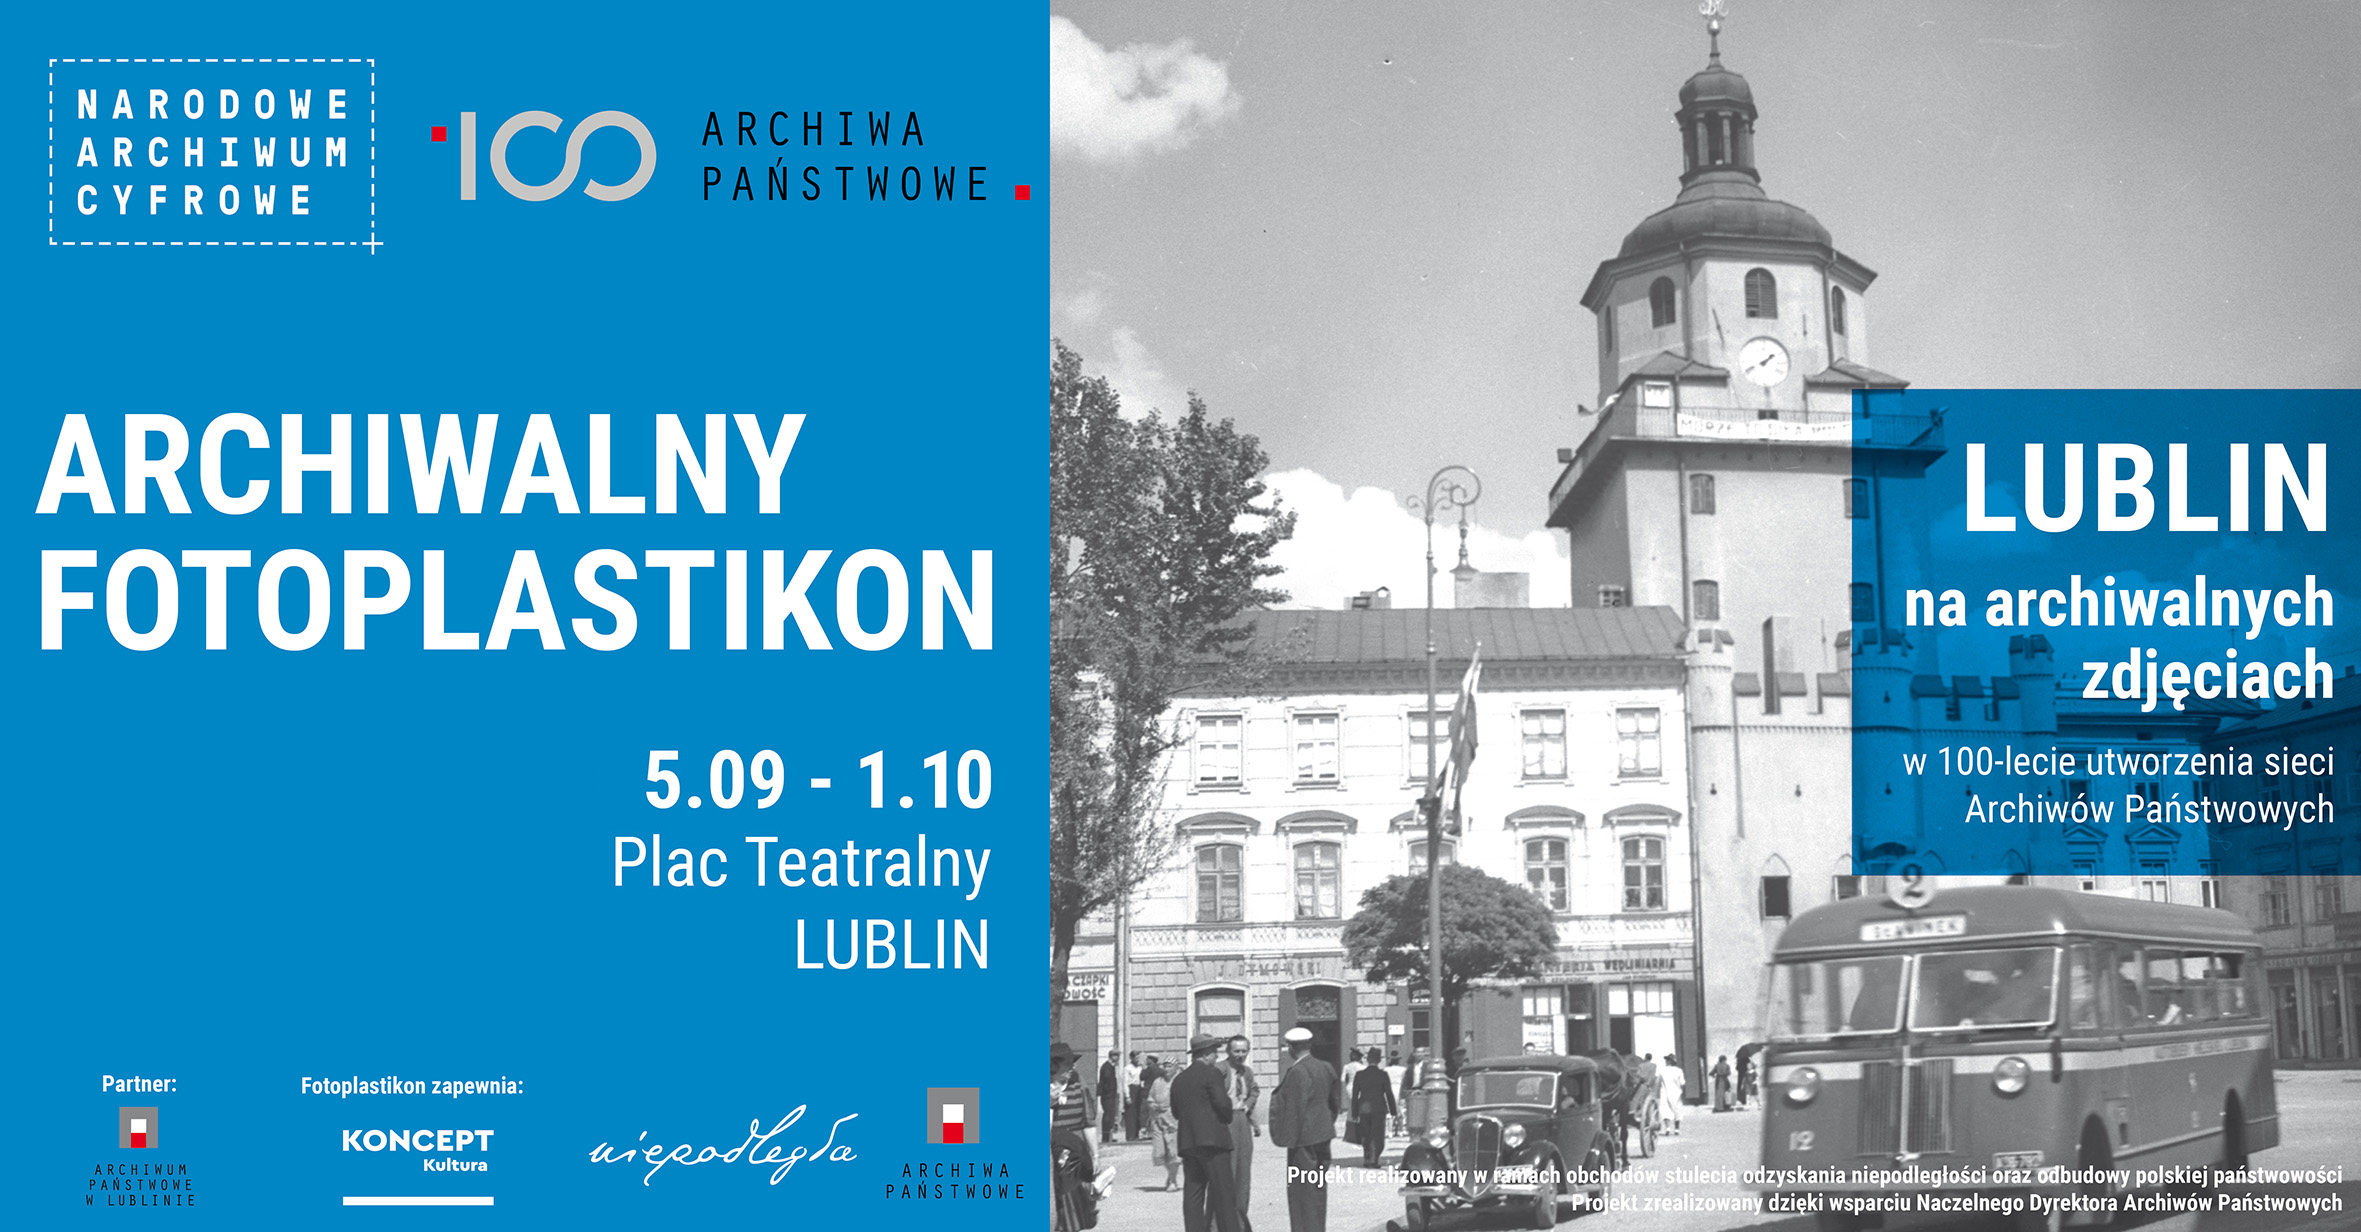 Archiwalny Fotoplastikon w Lublinie, plac Teatralny, 5 września – 1 października 2019 r.